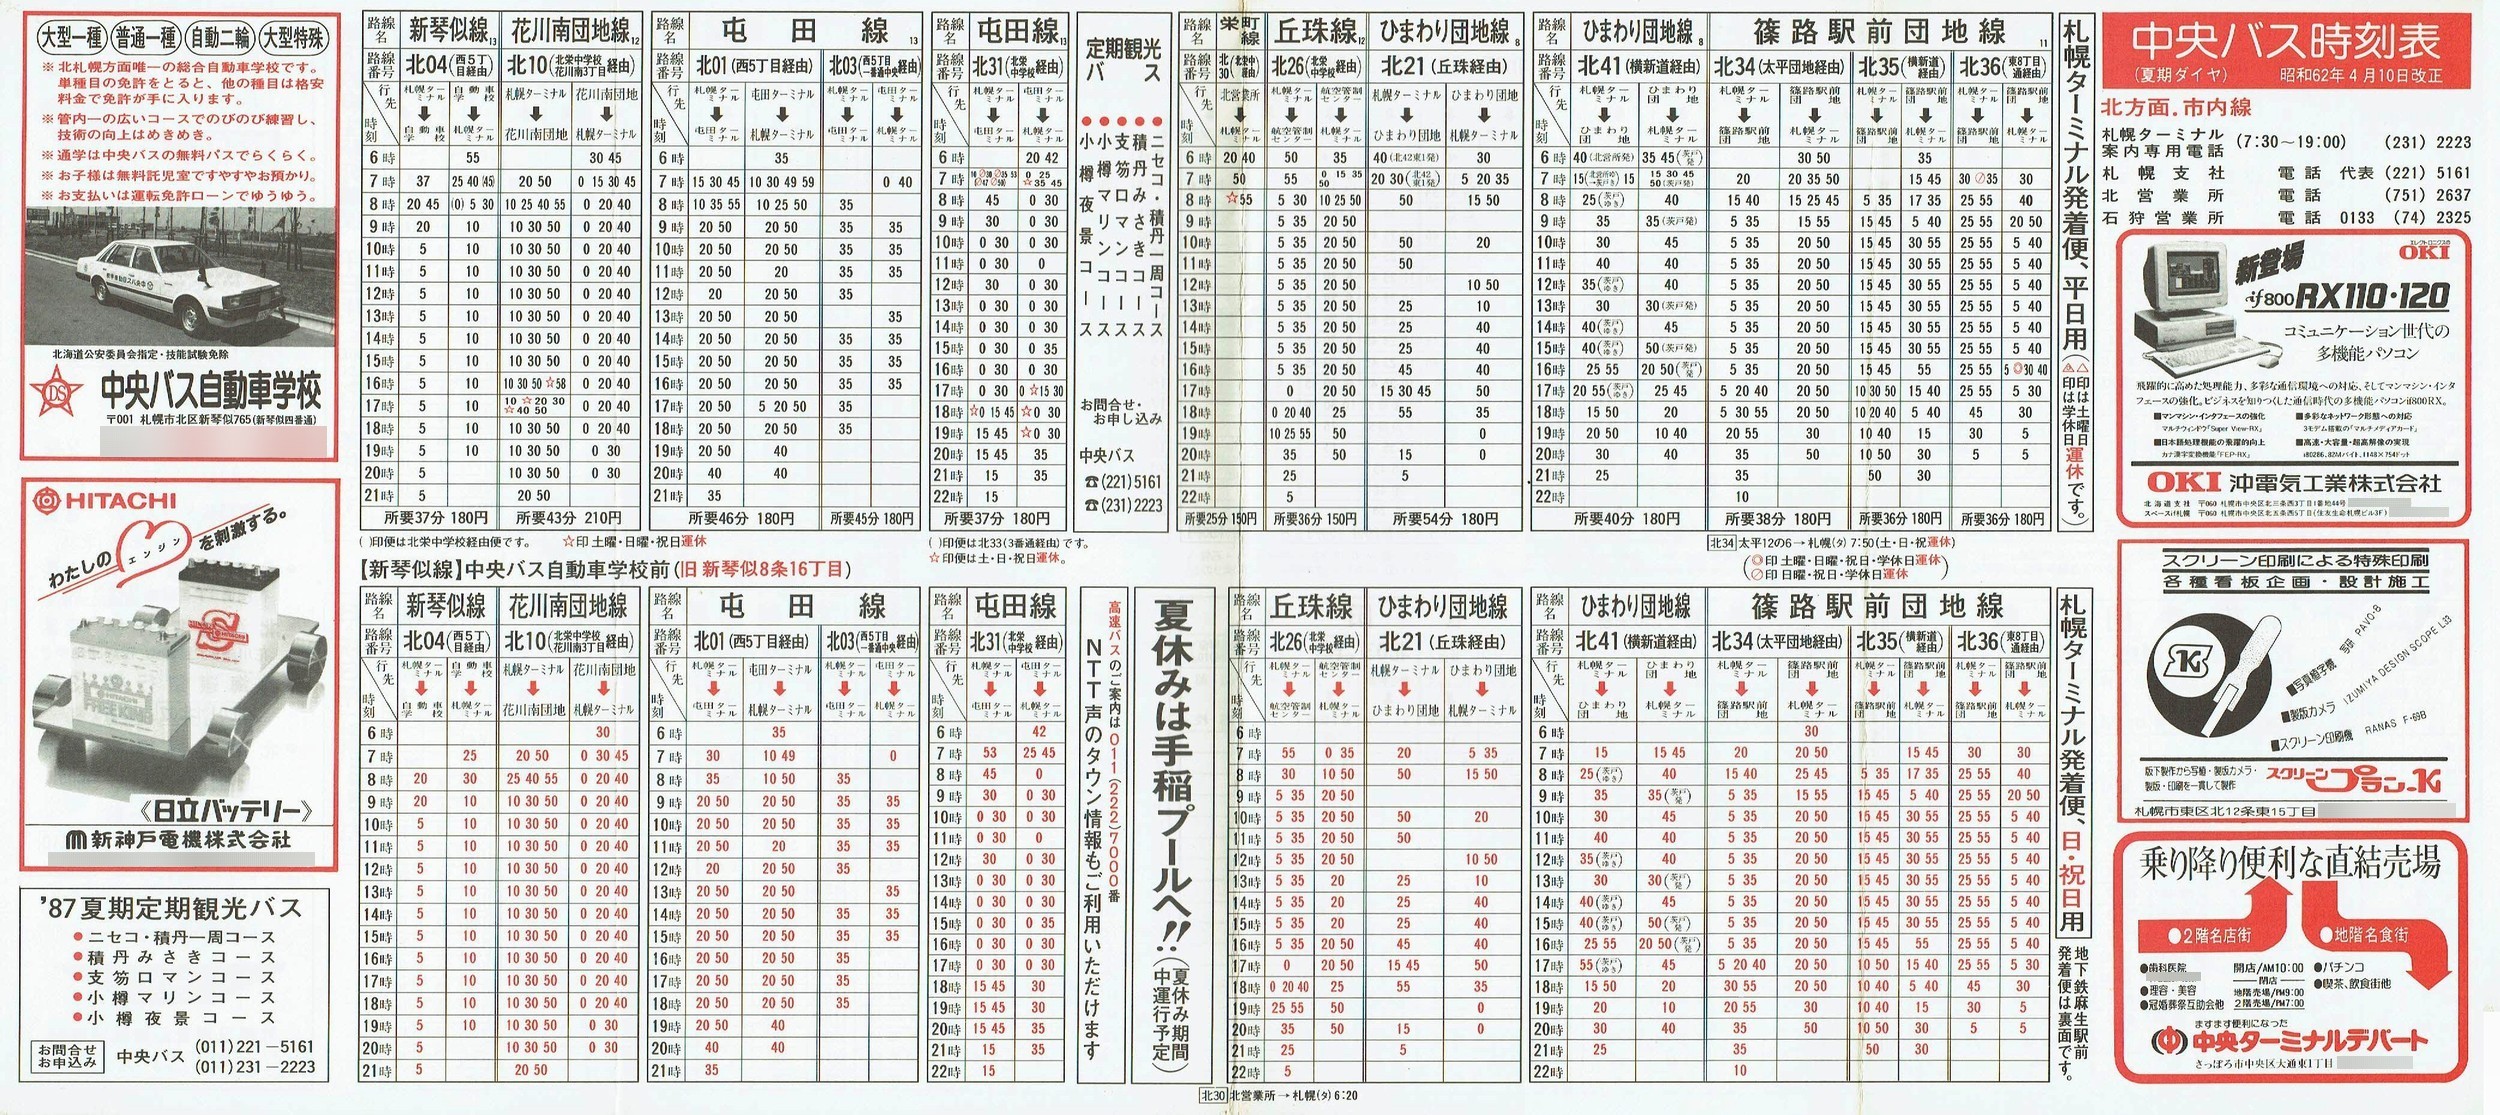 1987-04-10改正_北海道中央バス(札幌)_札幌市内線北方面時刻表表面